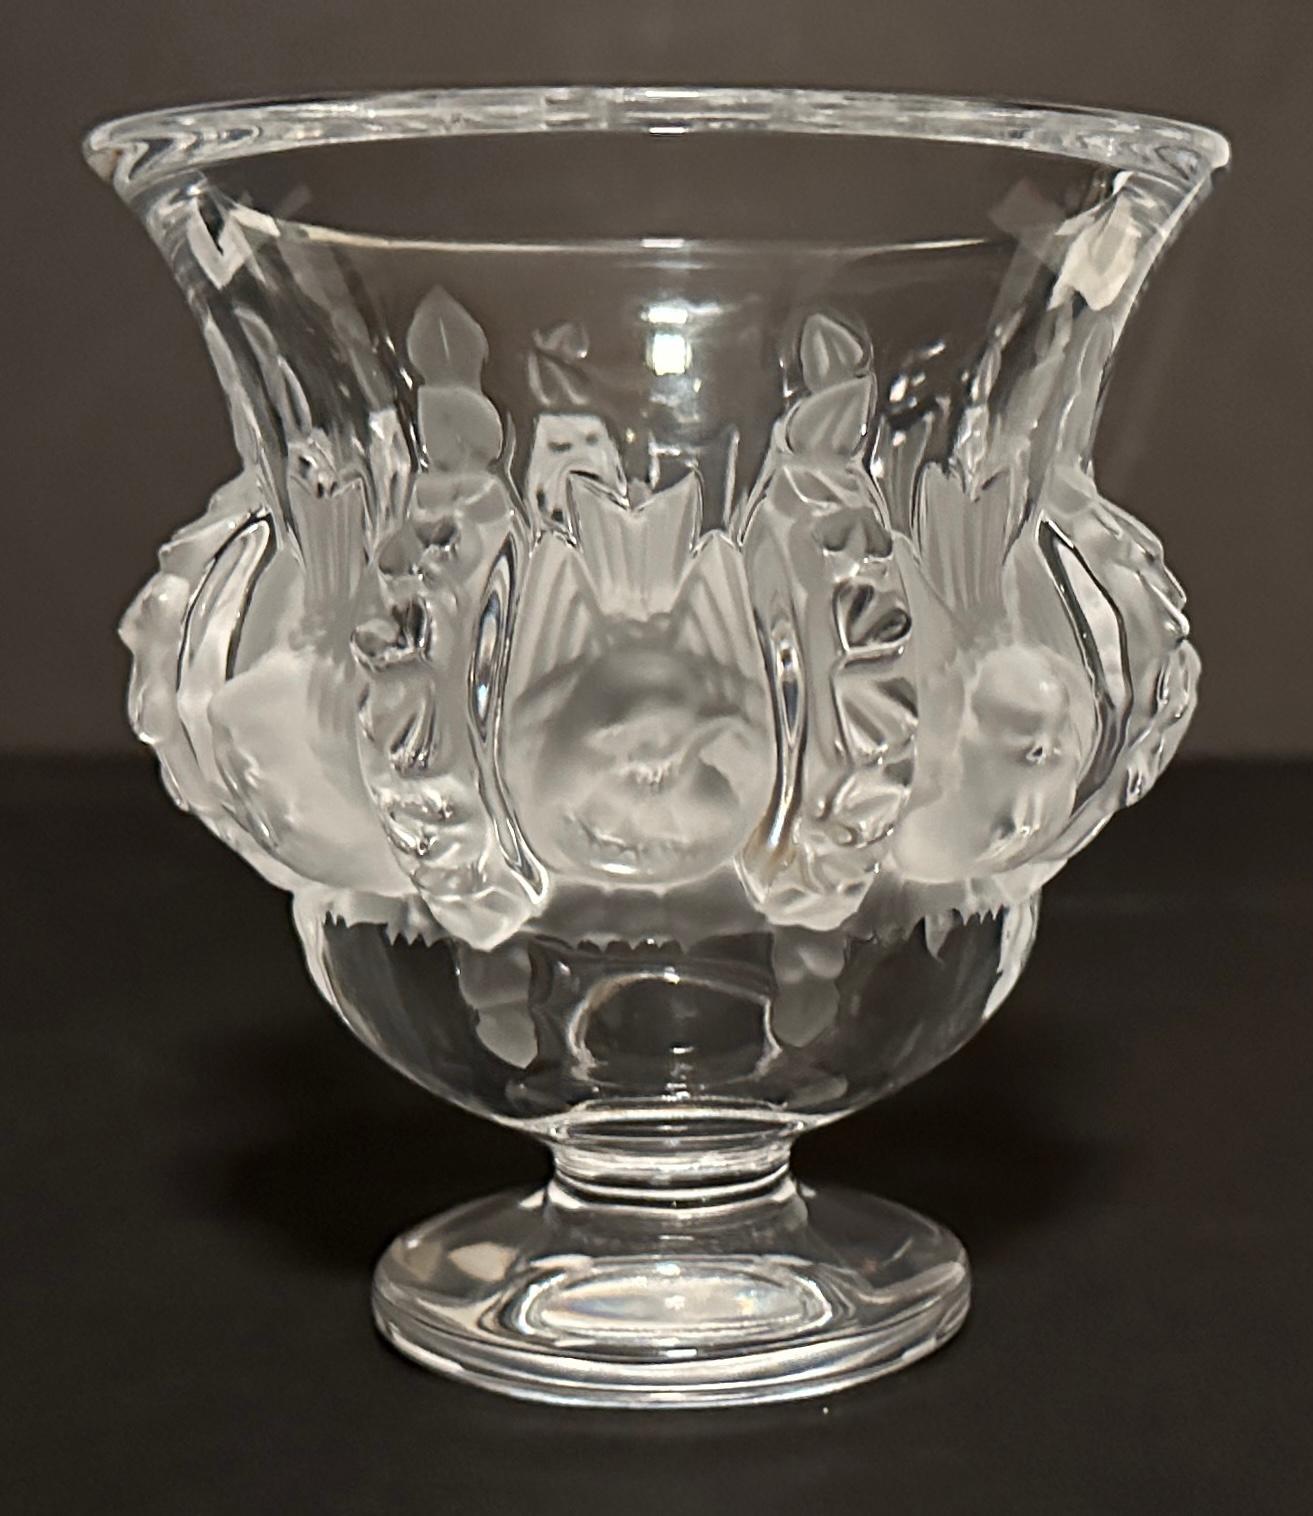 Vase en cristal Lalique Dampierre, signé sur le fond.
Conçu en 1948 par Marc Lalique, ce vase est décoré d'oiseaux sculptés en cristal satiné. A travers ce vase, Lalique rend hommage à deux thèmes chers à René Lalique, la Faune et la Flore . Cette